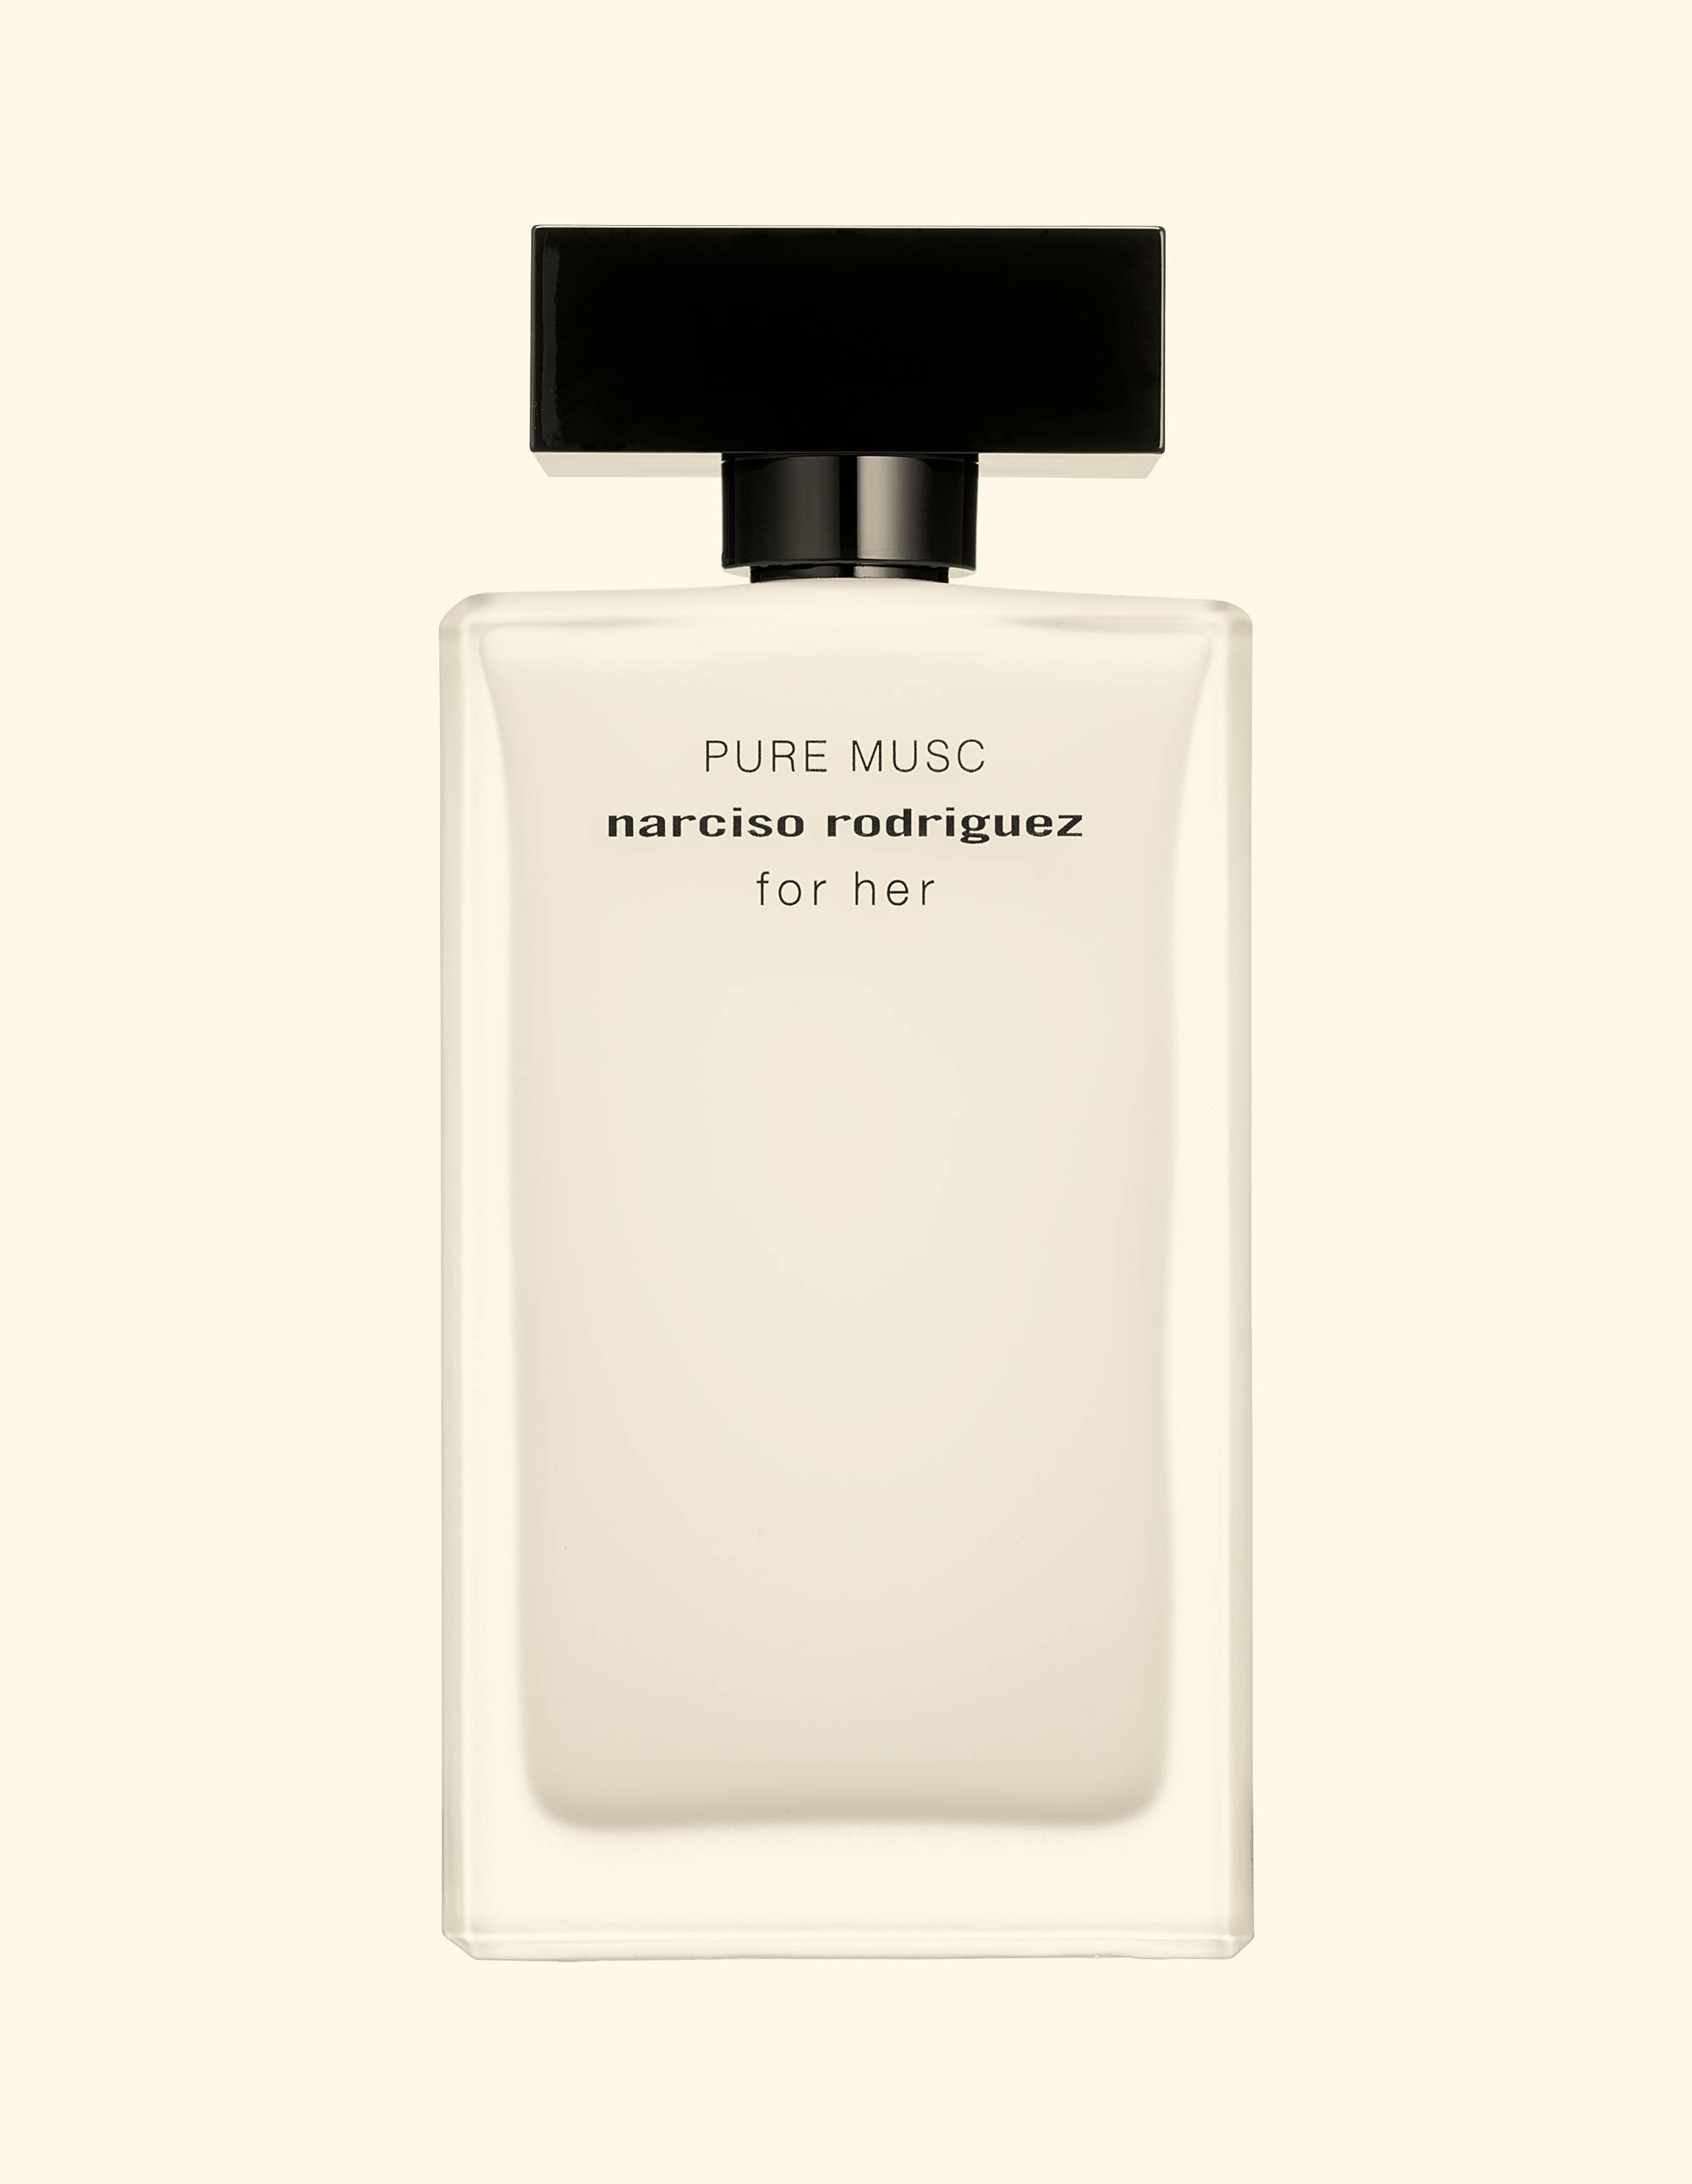 "Sensualité ”, les nouveaux parfums de peau au fond musqué photographiés par Antoine Picard 